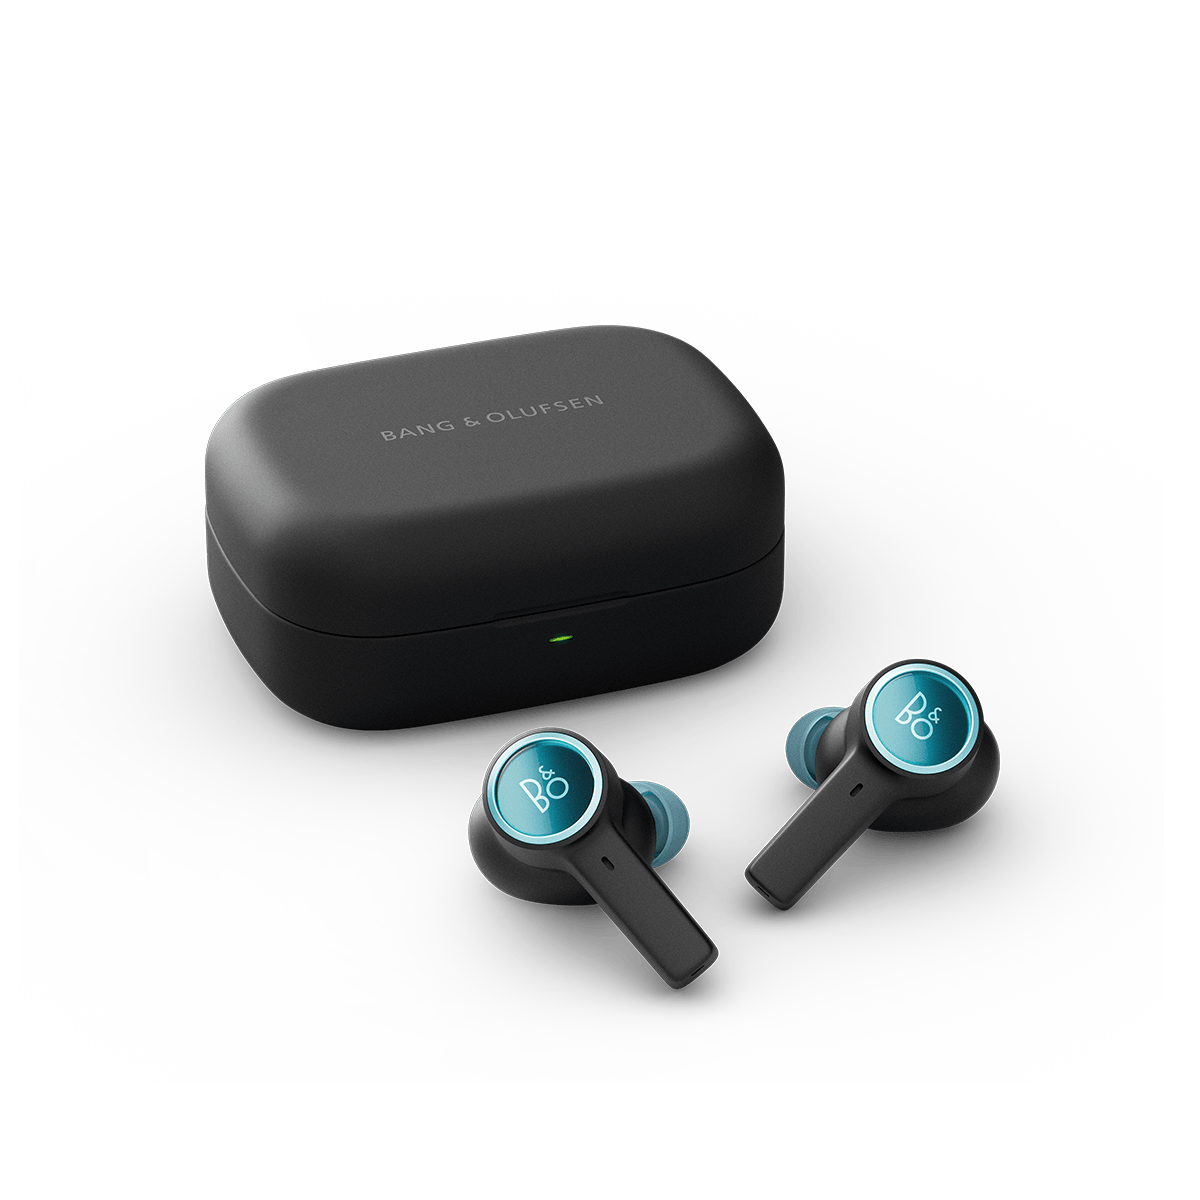 Bang & Olufsen actualiza su catálogo de audio con sus nuevos auriculares  sin cables, los Beoplay E6